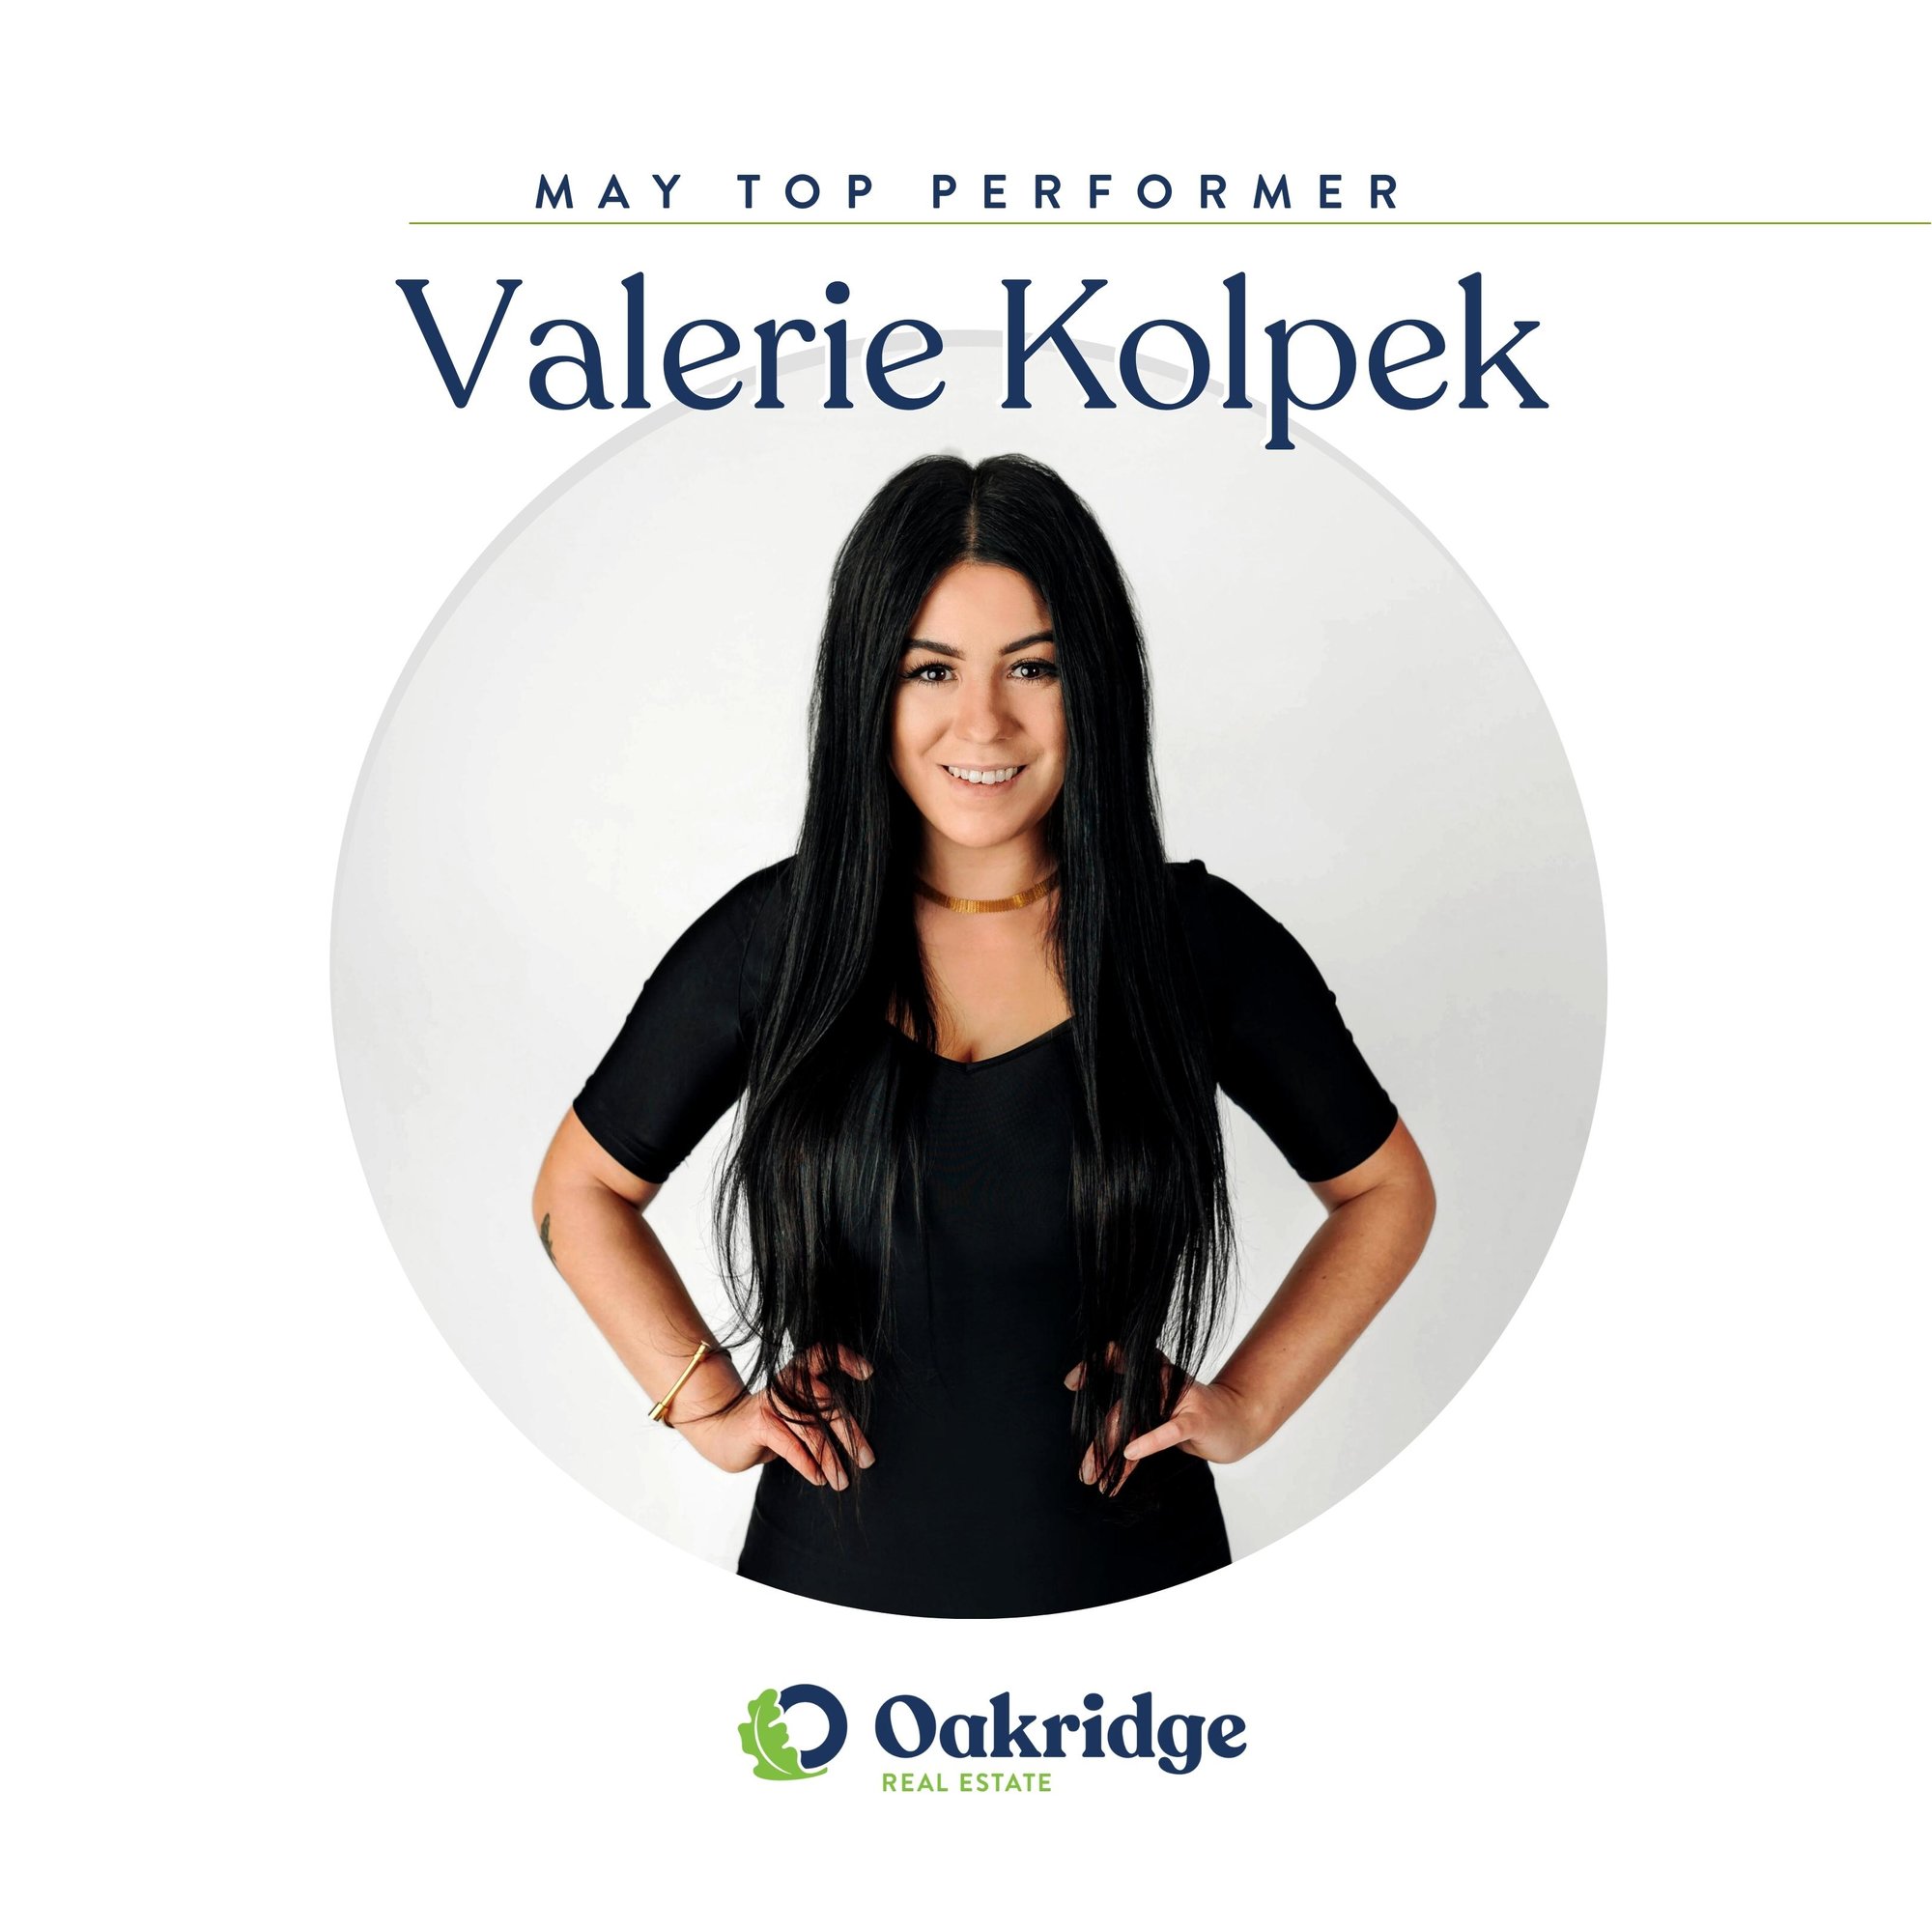 Valerie Kolpek May Top Performer Oakridge Real Estate